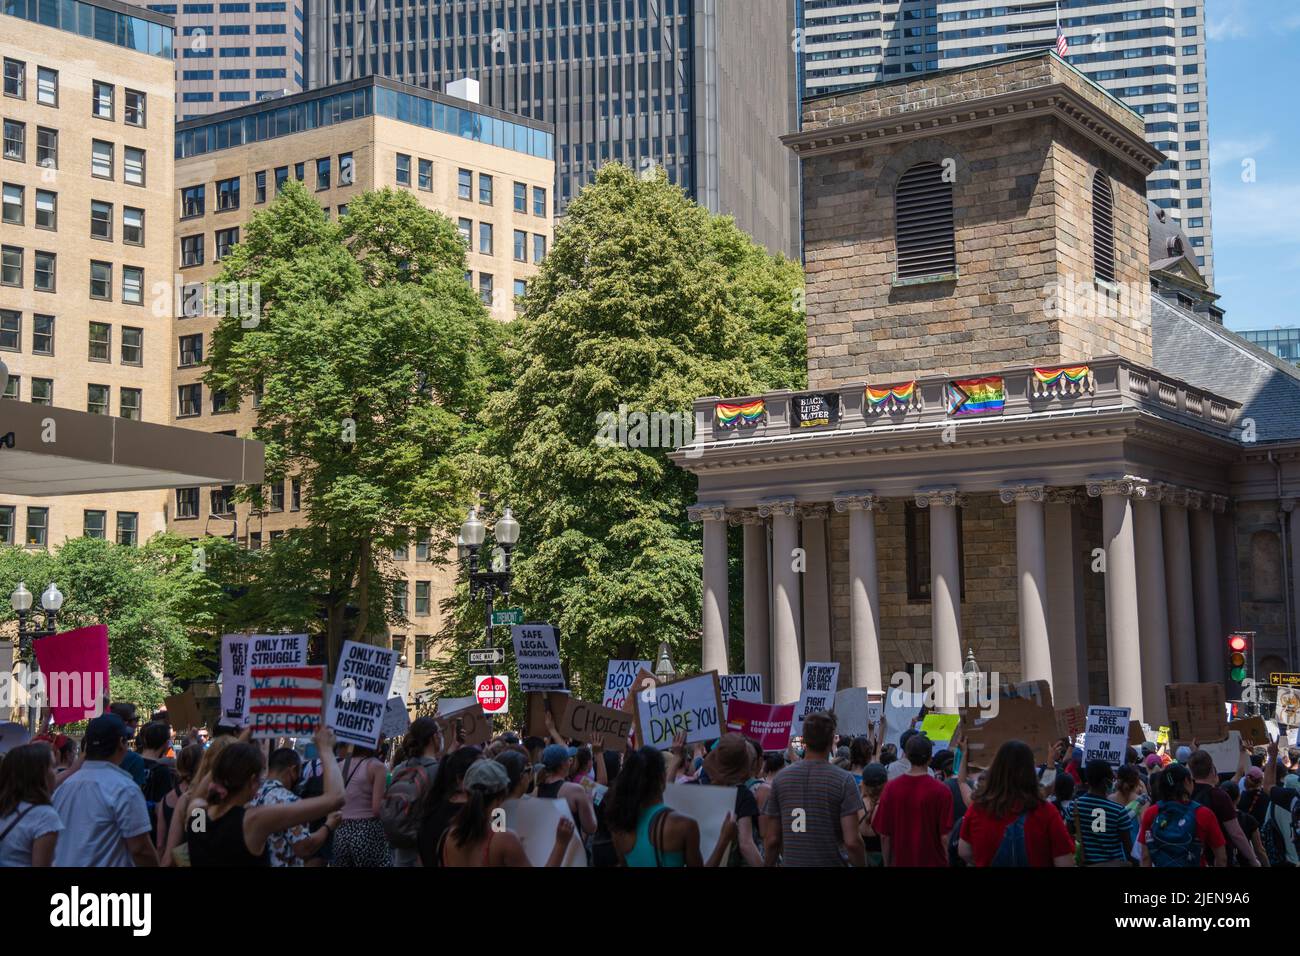 Des manifestations portant des signes favorables à l'avortement sont en manifestation en réponse à la décision de la Cour suprême qui renversa Roe c. Wade à la Maison d'État du Massachusetts Banque D'Images